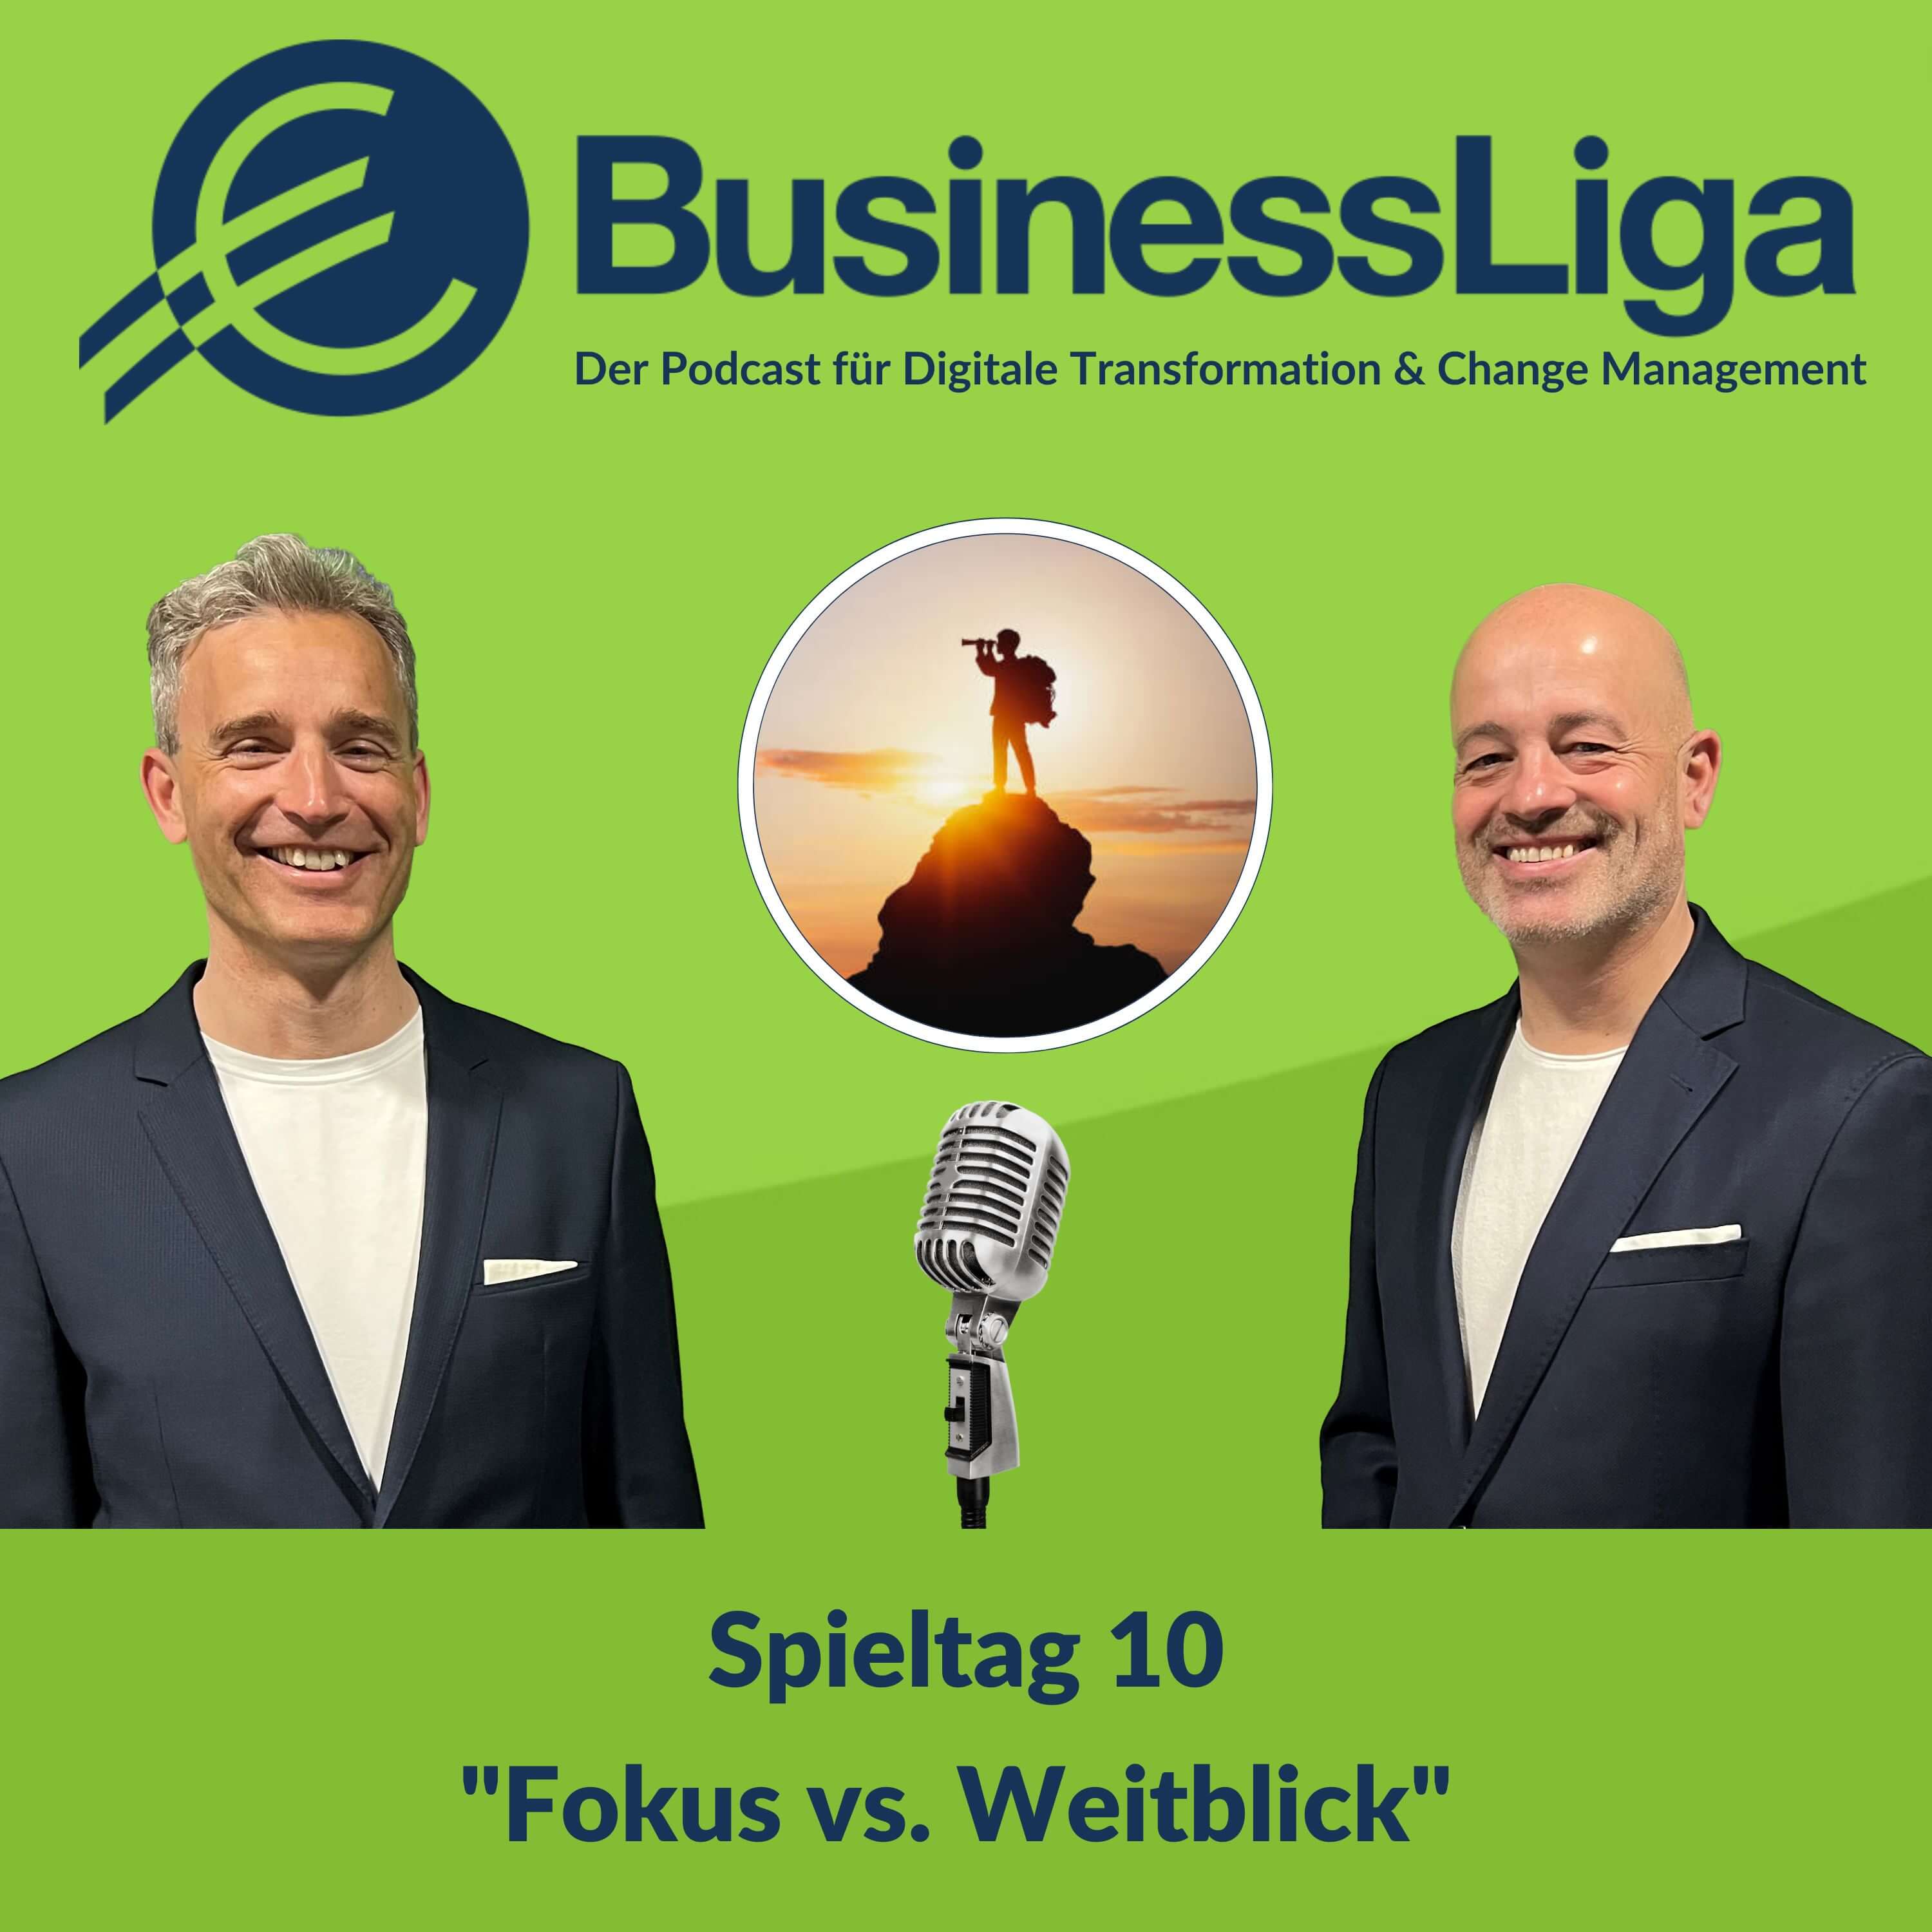 Spieltag 10: "Fokus vs. Weitblick"